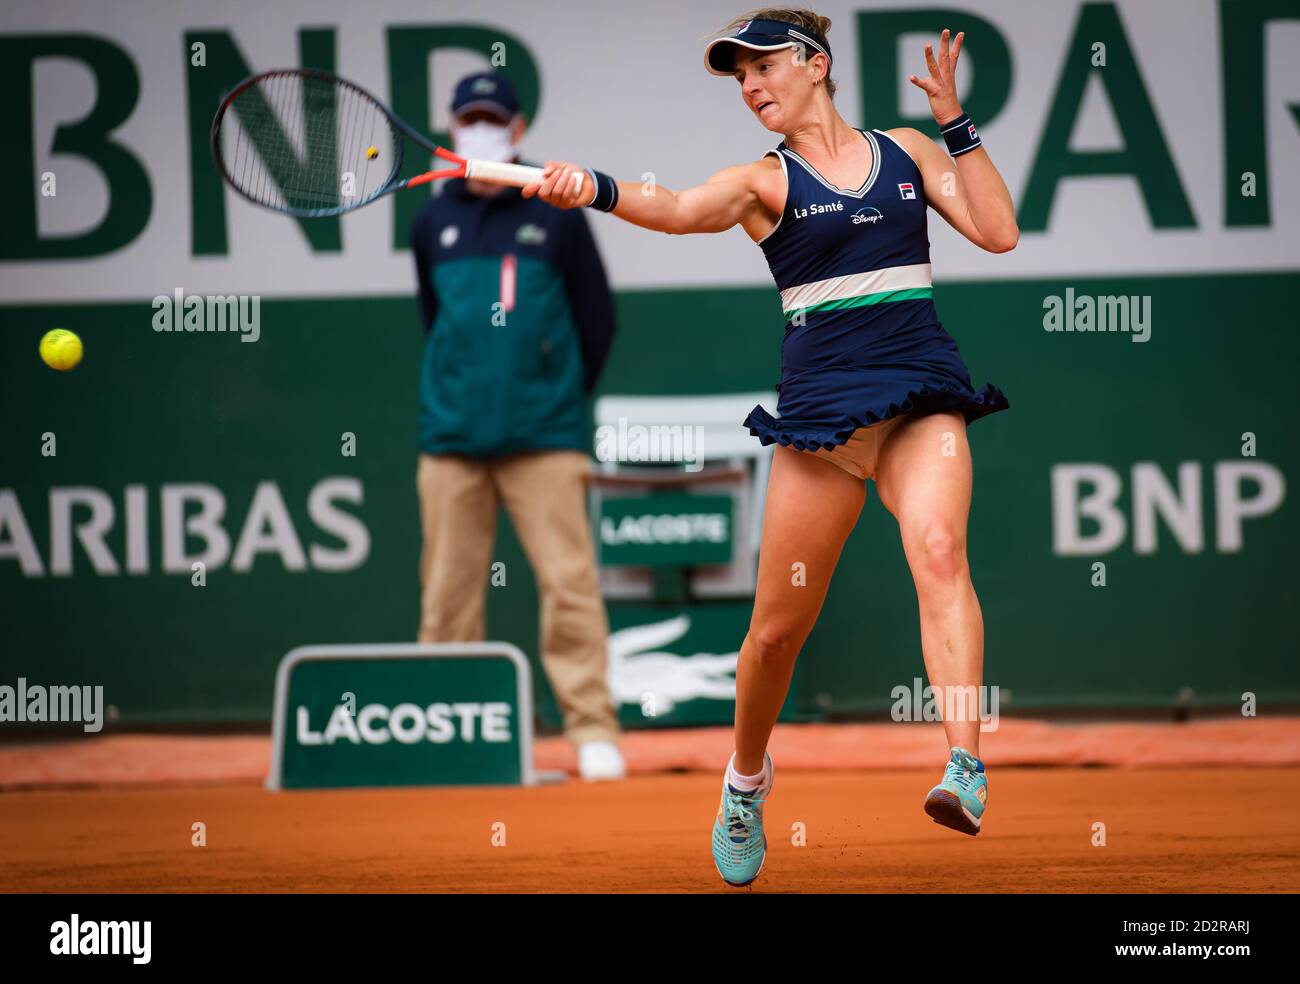 adia Podoroska dell'Argentina in azione contro Elina Svitolina dell'Ucraina durante il quarto-finale al Roland Garros 2020, Grand Slam tennis to Foto Stock